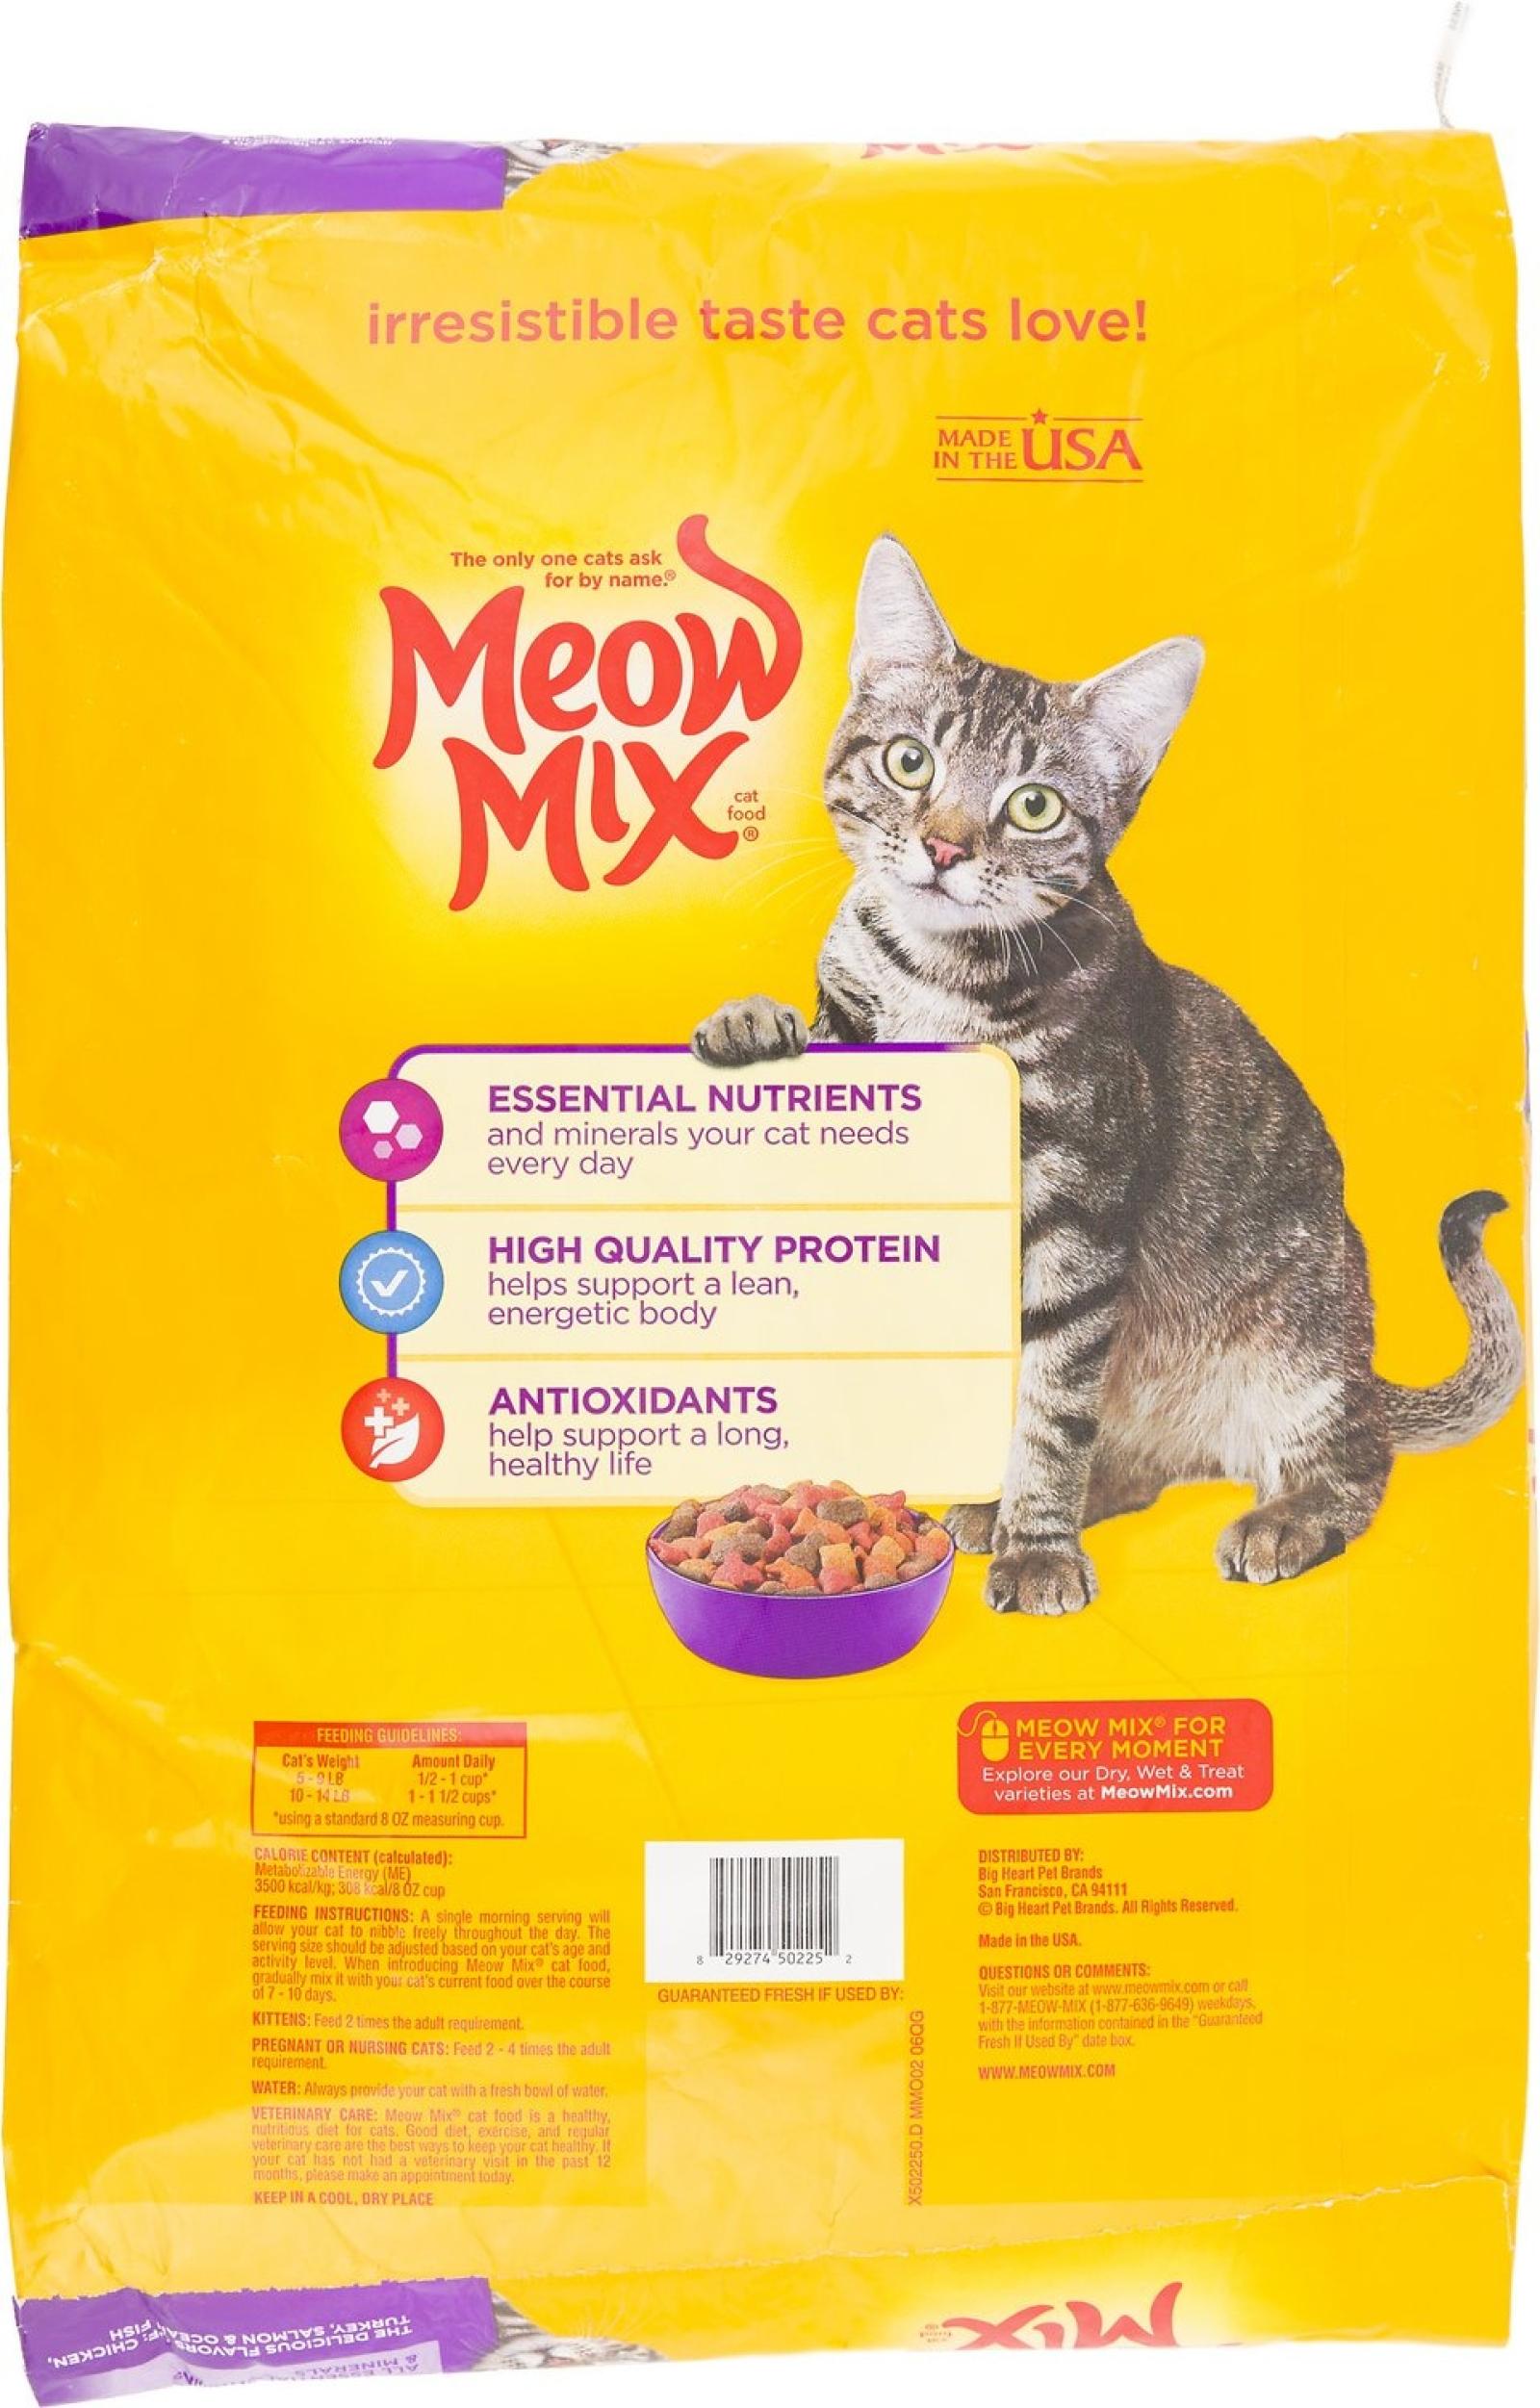 Meow Mix Original Choice Cat Food